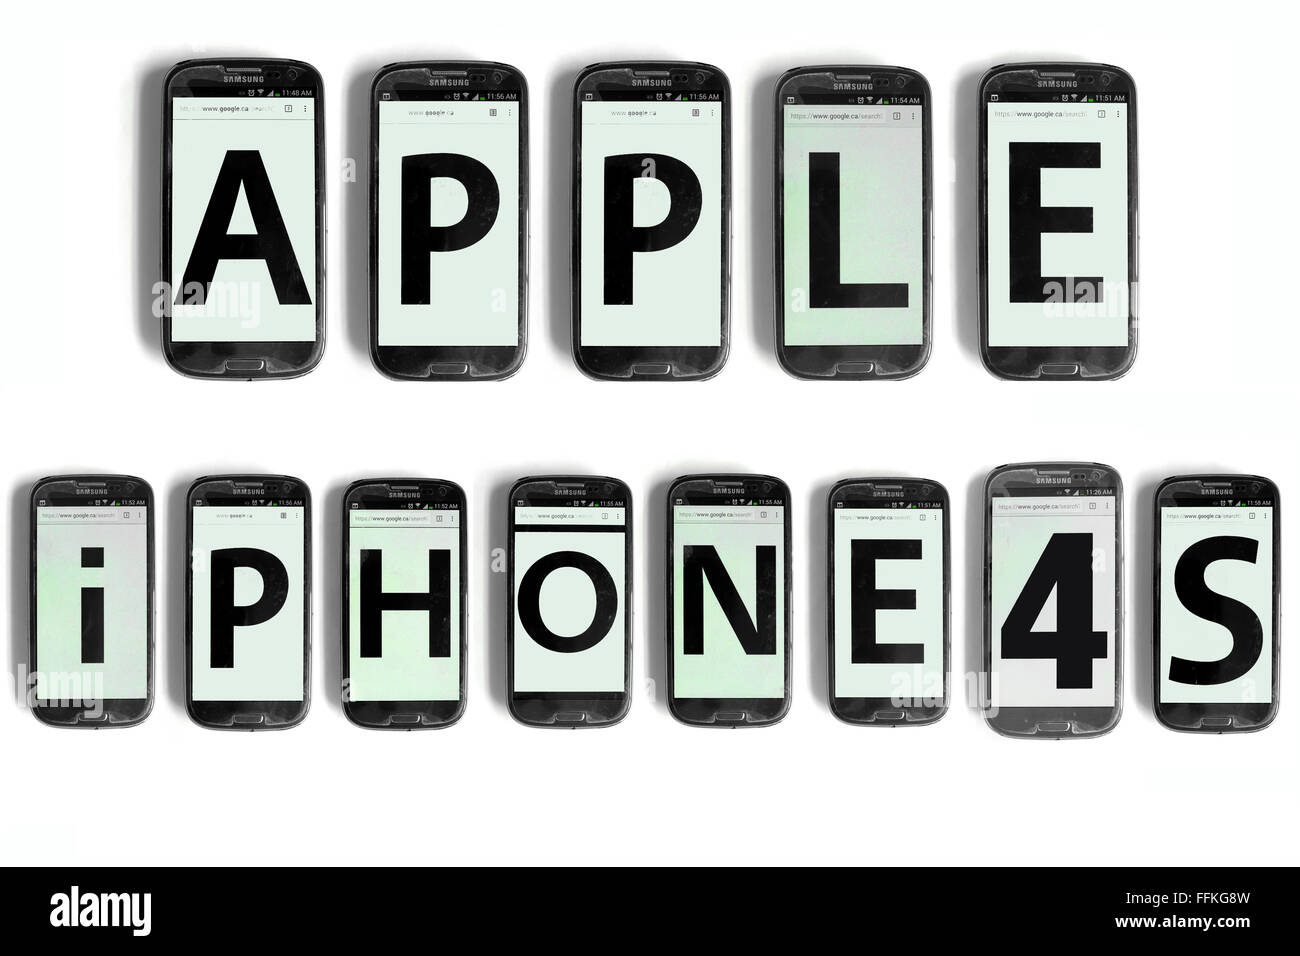 Apple iPhone 4s scritto su schermi di smartphone fotografati contro uno sfondo bianco. Foto Stock